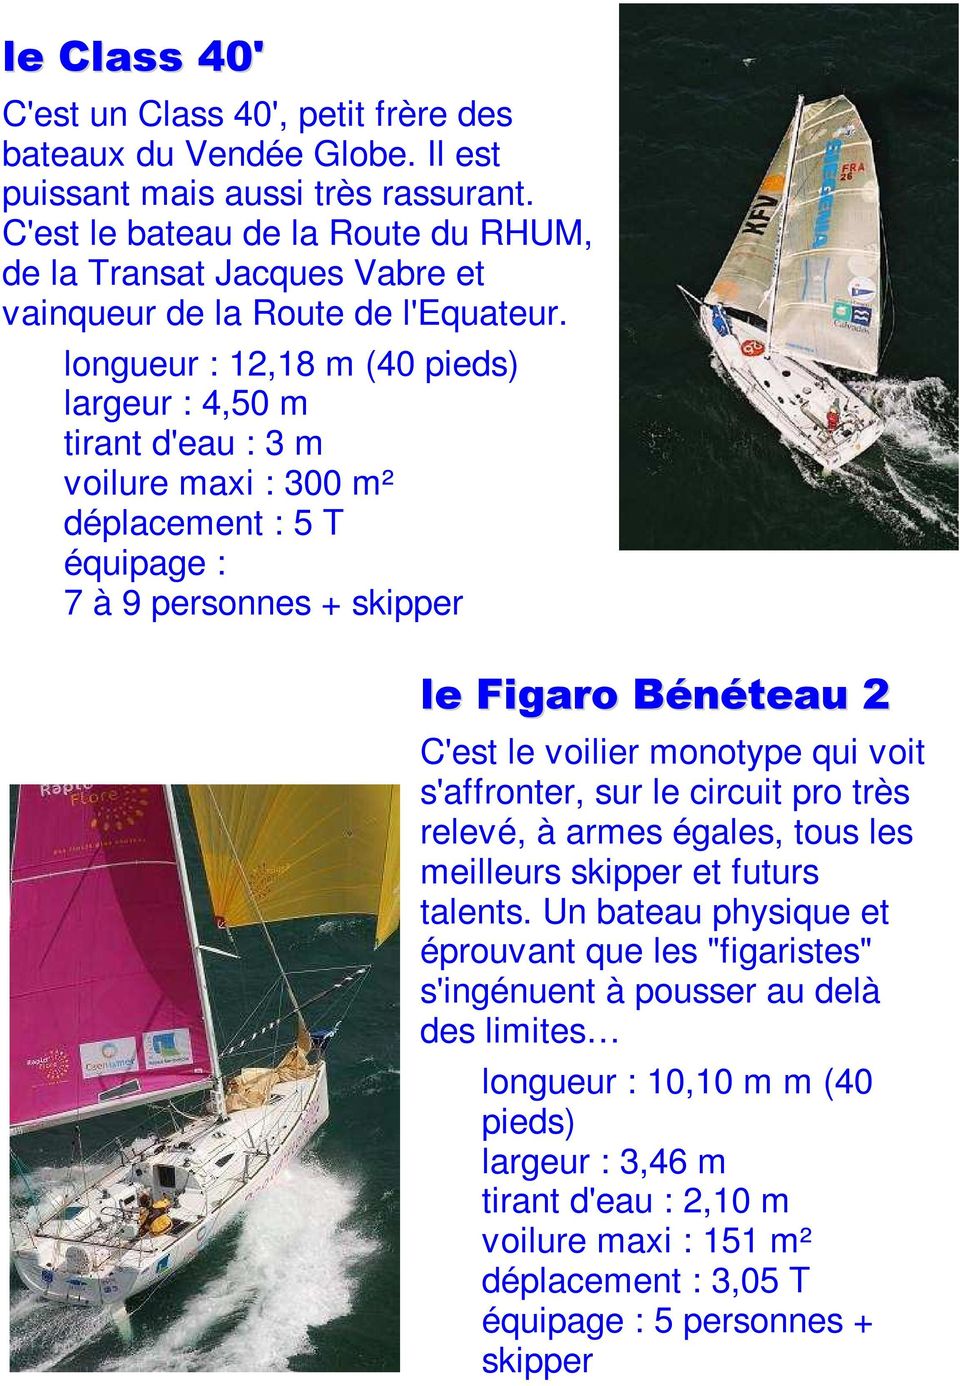 longueur : 12,18 m (40 pieds) largeur : 4,50 m tirant d'eau : 3 m voilure maxi : 300 m² déplacement : 5 T équipage : 7 à 9 personnes + skipper le Figaro Bénéteau 2 C'est le voilier monotype